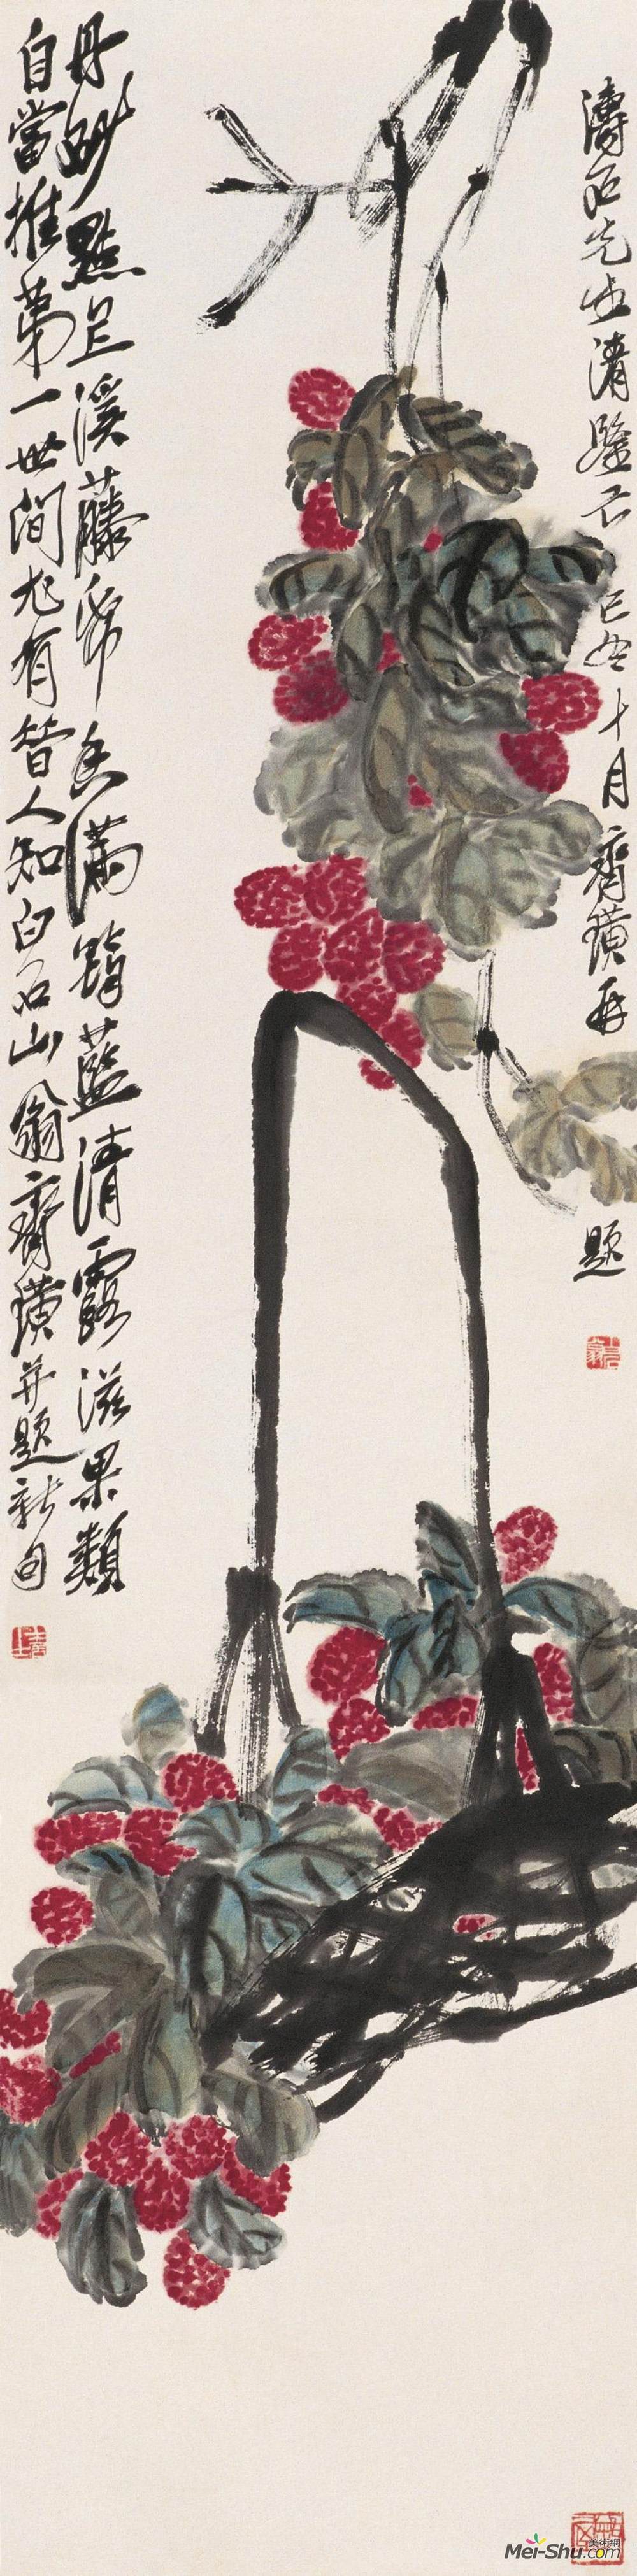 《荔枝》齐白石中国画高清作品欣赏